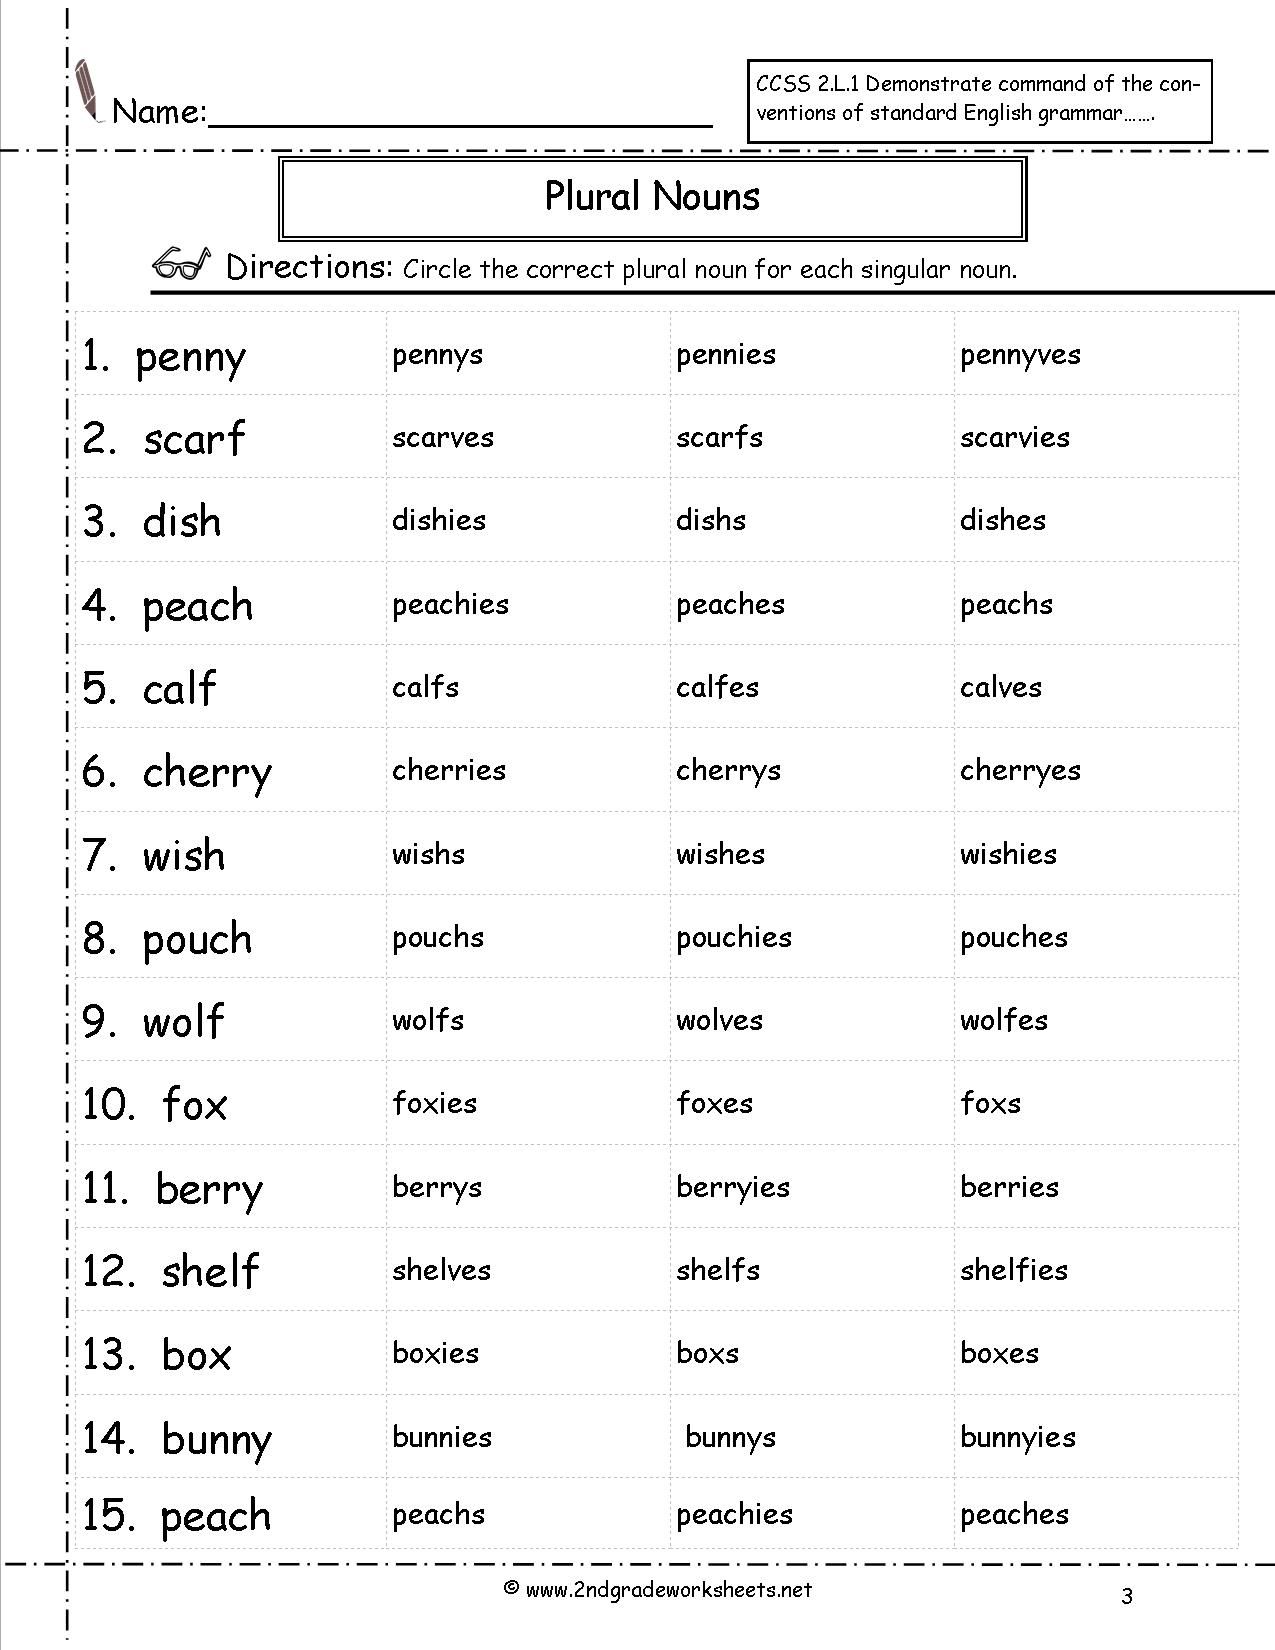 Plurals Worksheets For Grade 2